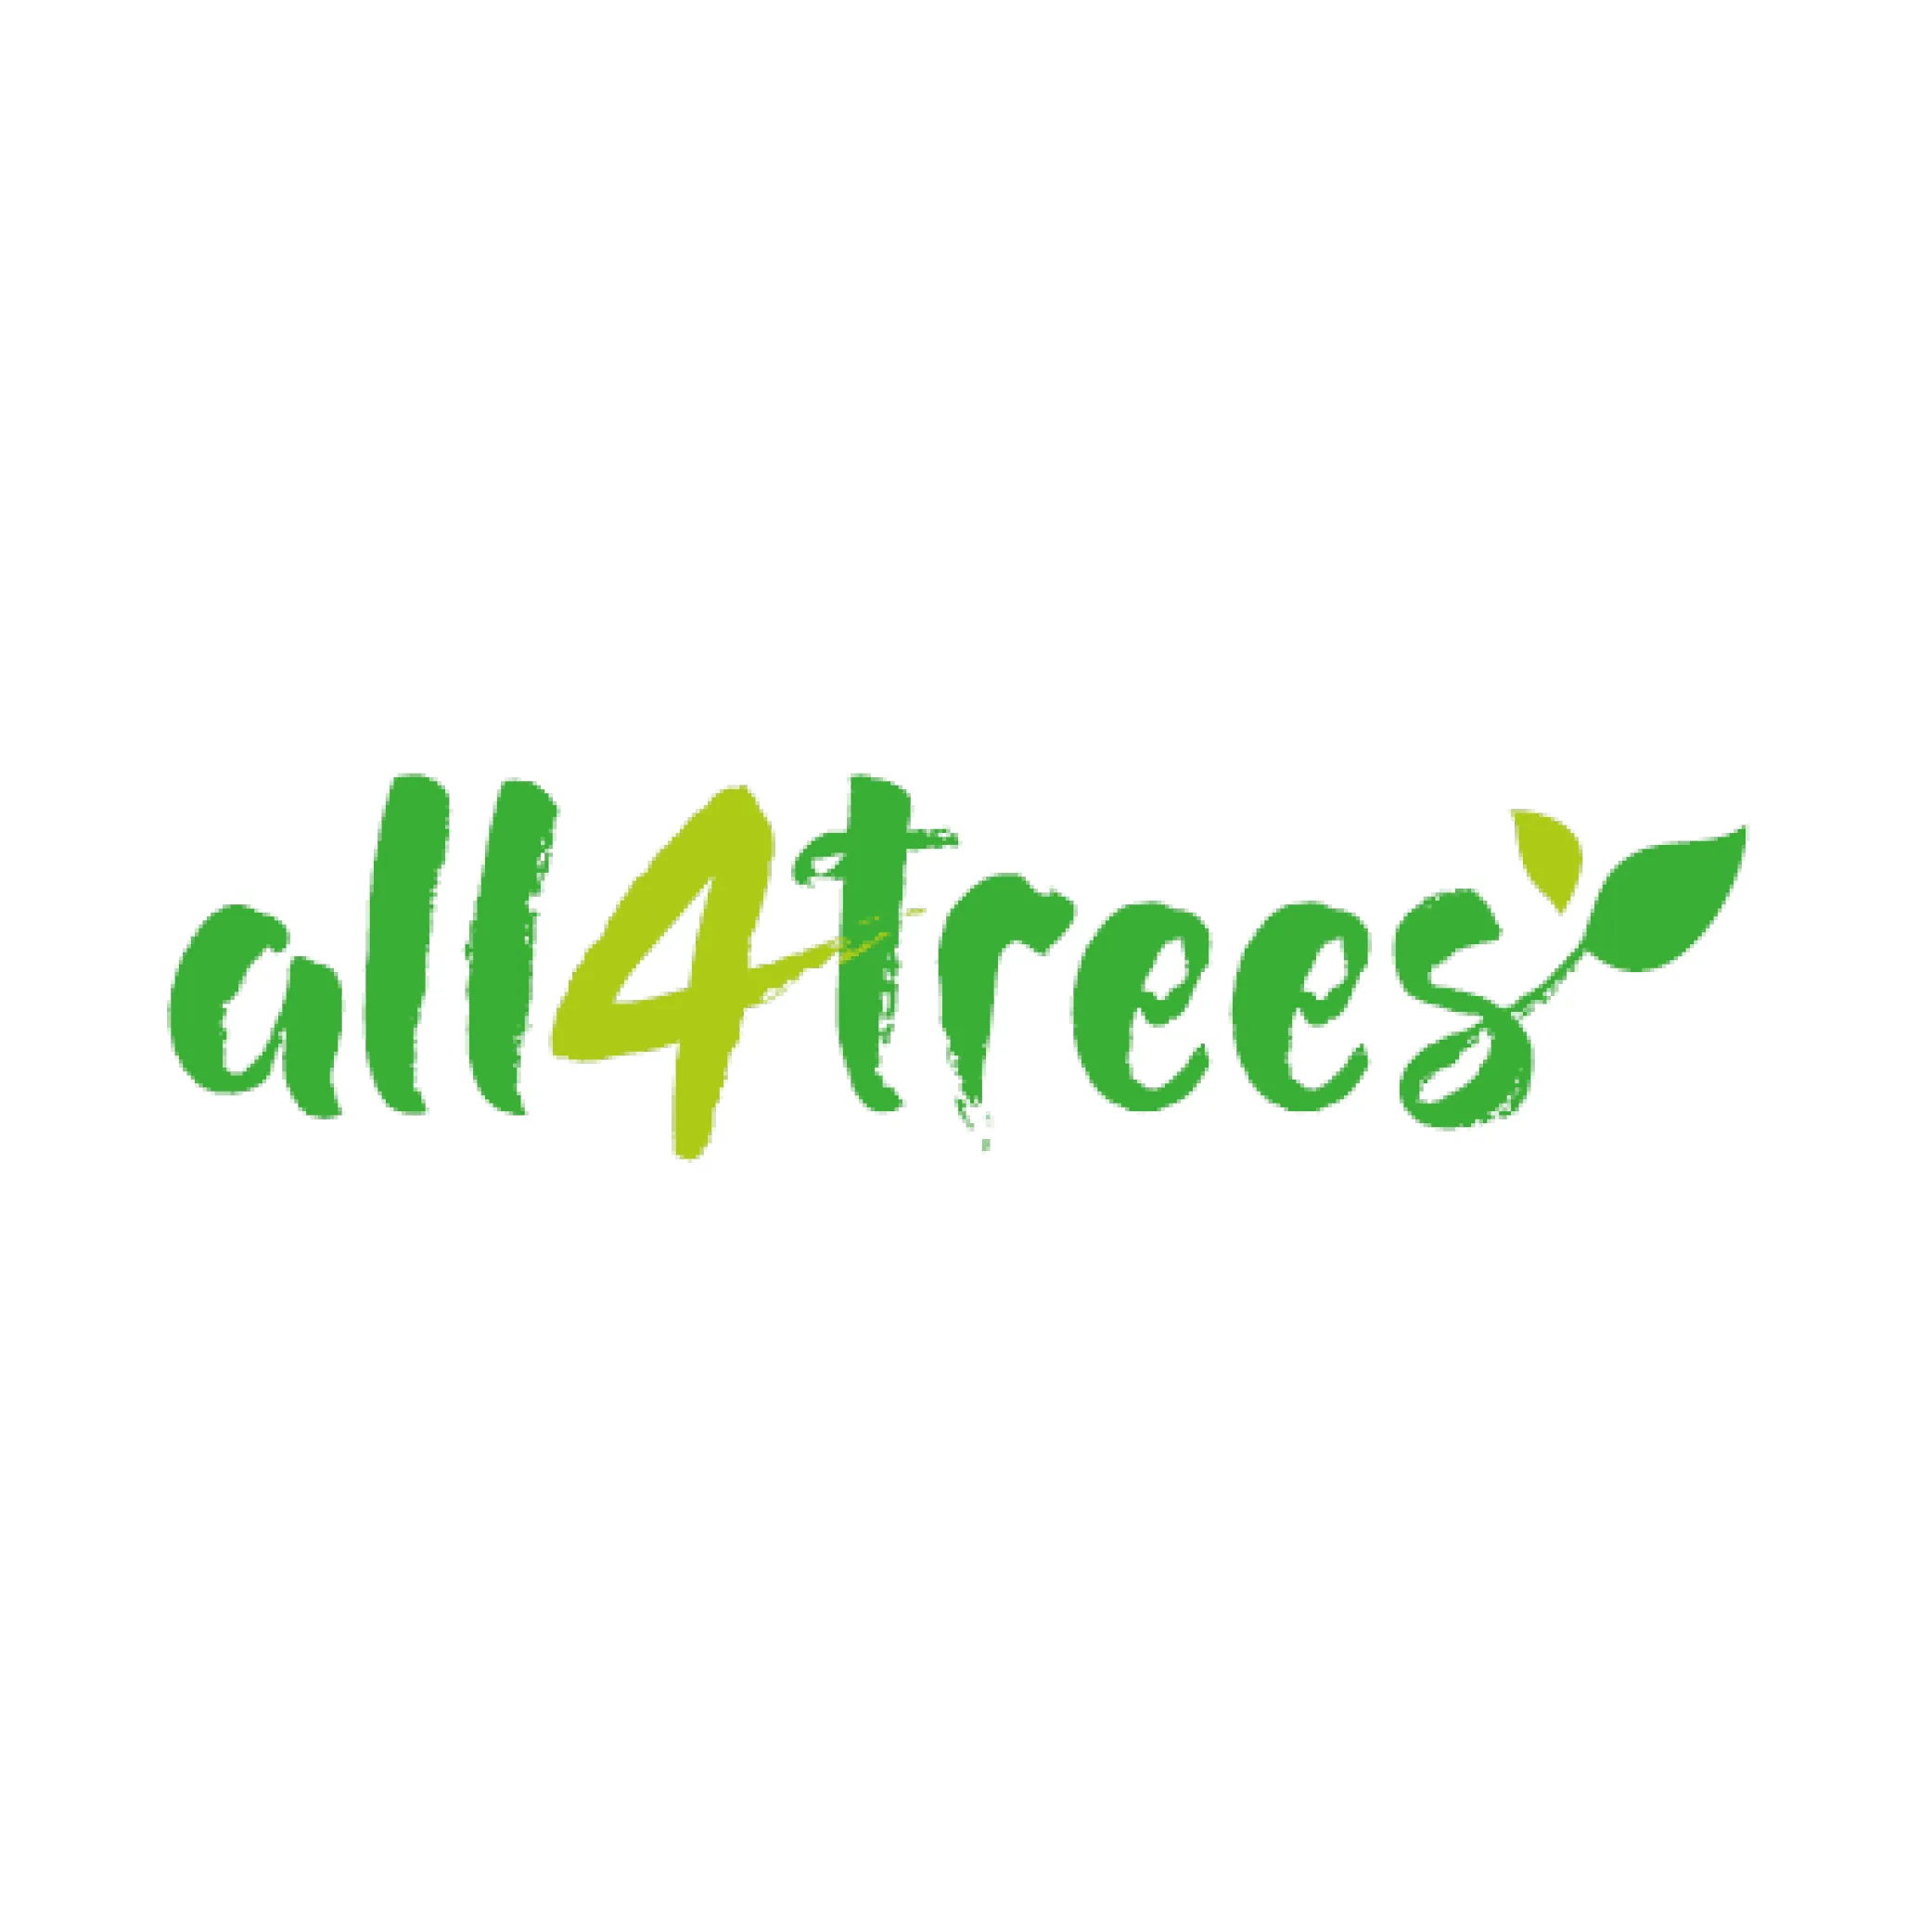 logo association all4trees